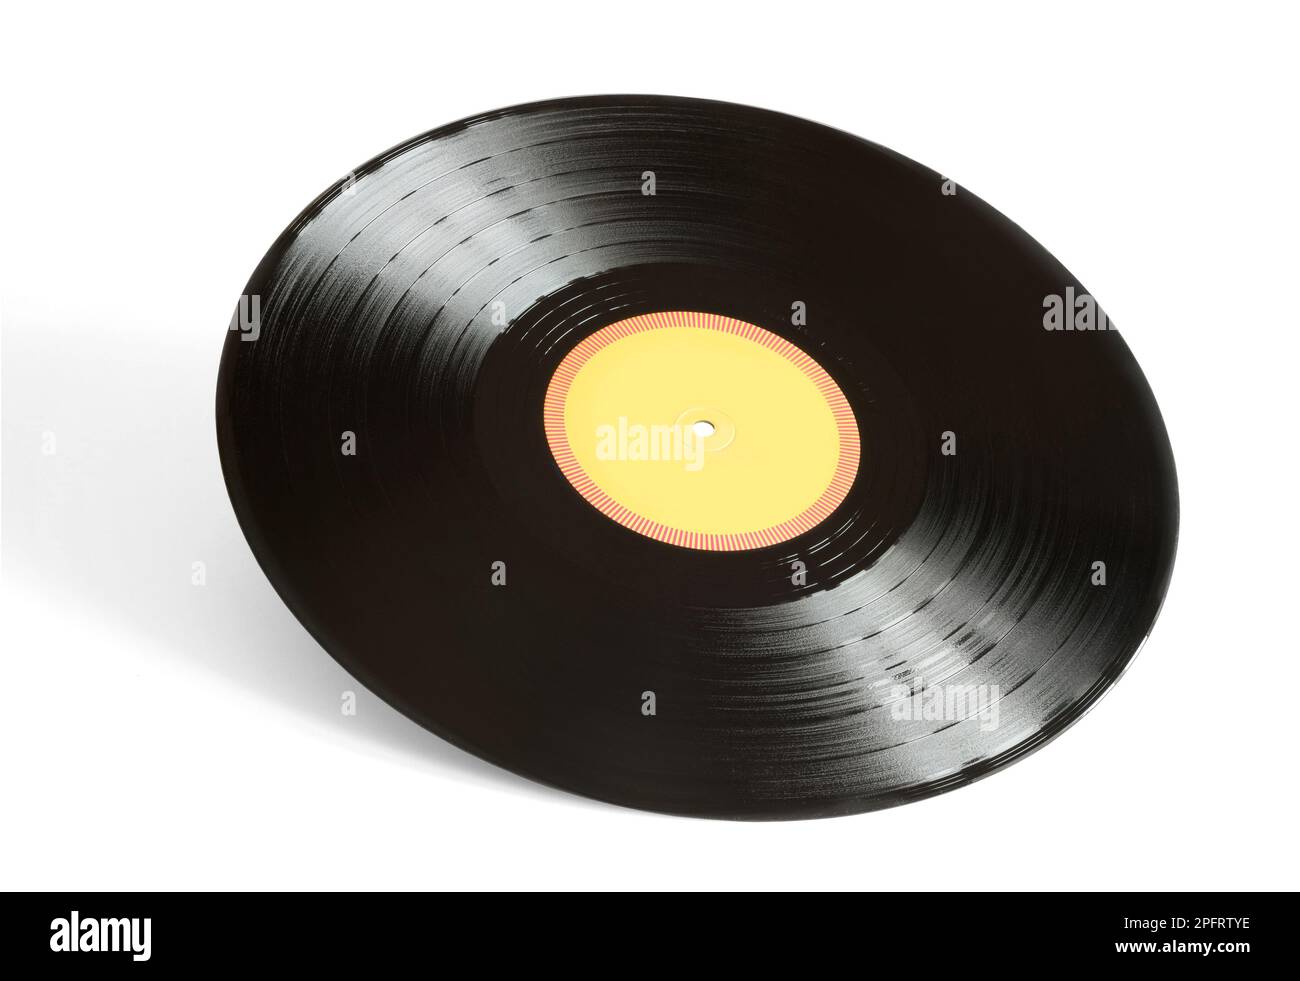 Disque vinyle vintage musique analogique le support d'enregistrement avec copie espace isolé sur fond blanc Banque D'Images